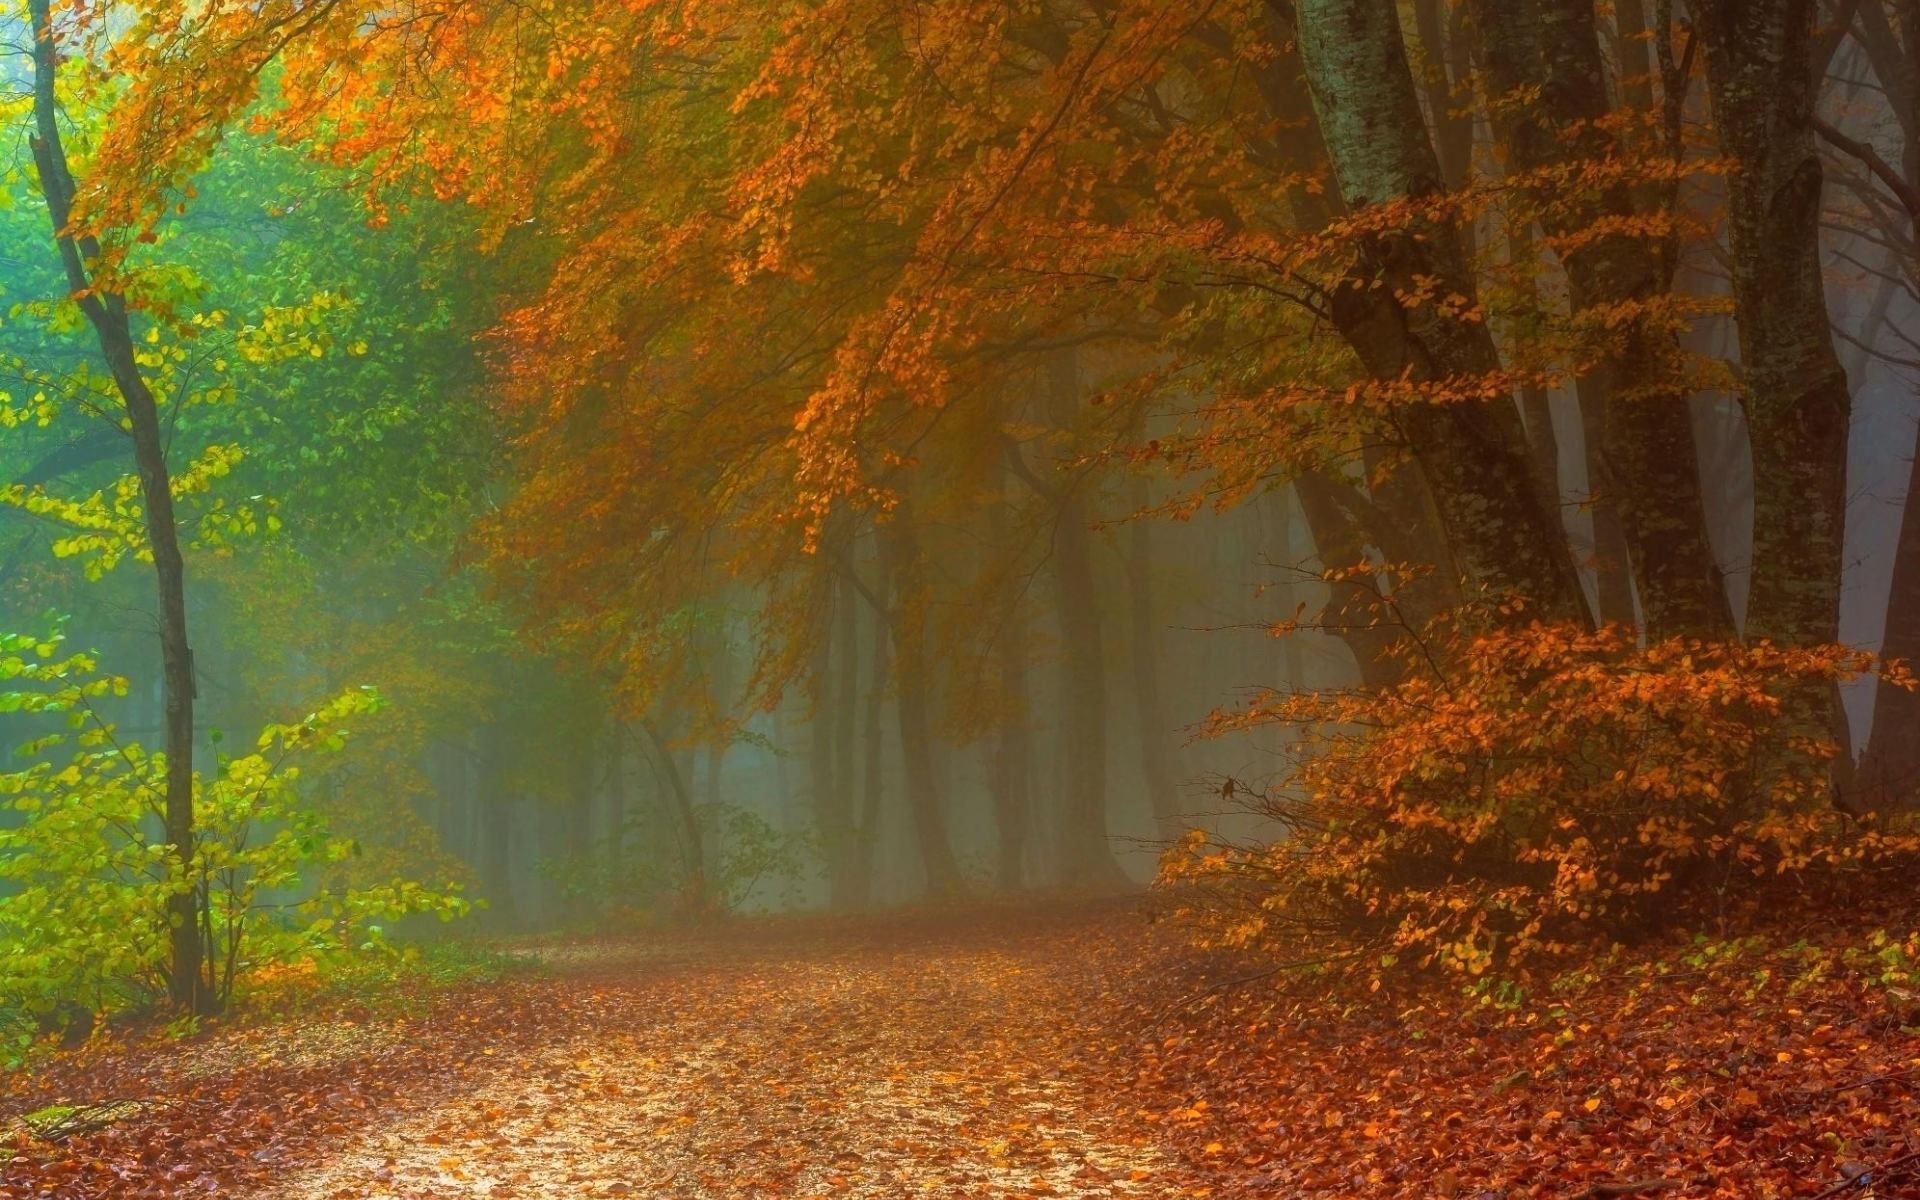 Скачать обои бесплатно Осень, Лес, Туман, Дорожка, Земля/природа картинка на рабочий стол ПК